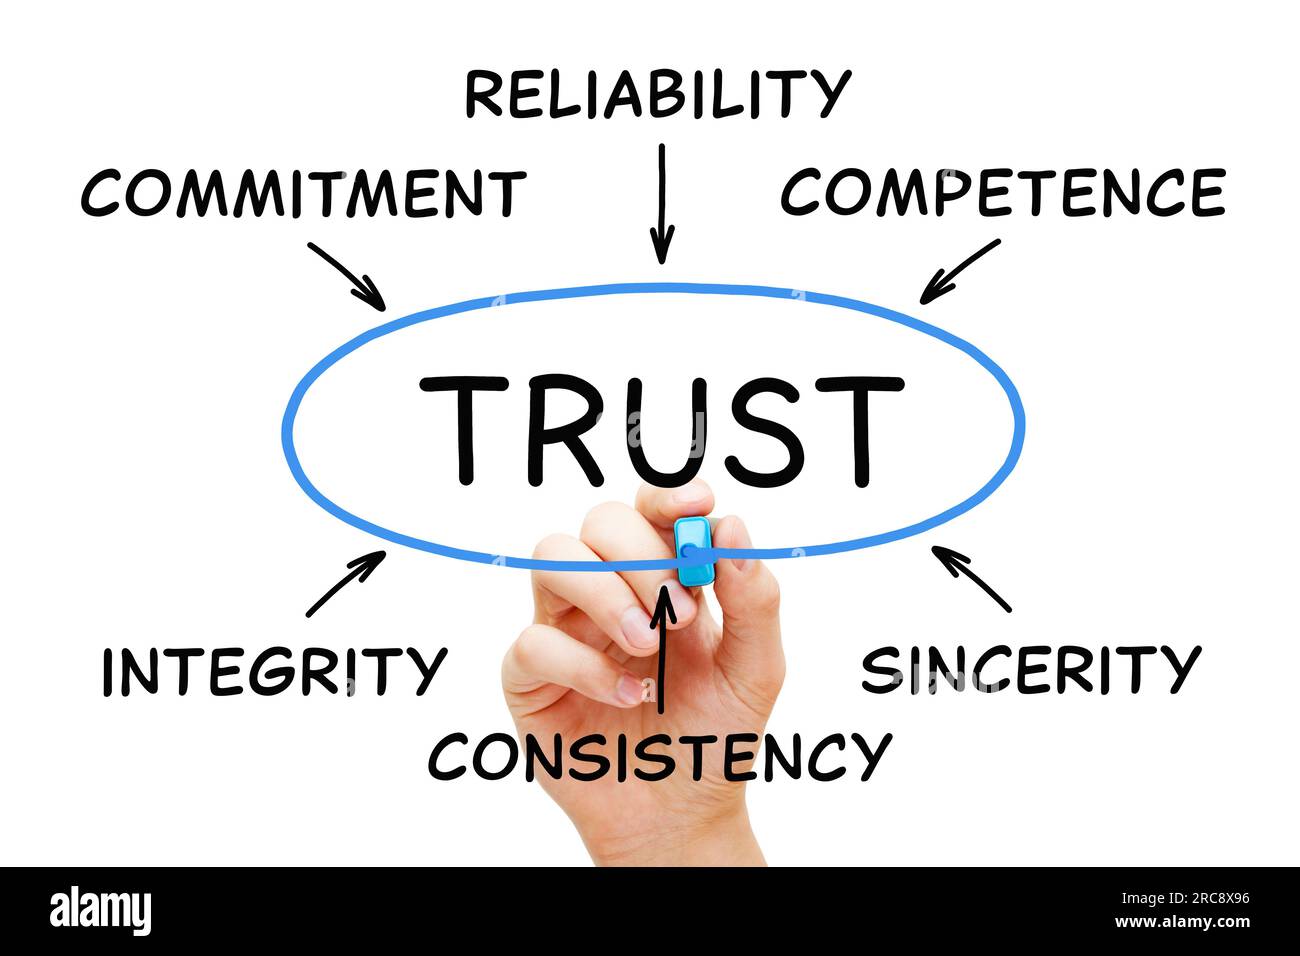 Schema di scrittura a mano sulla fiducia nell'azienda con parole correlate affidabilità, integrità, competenza, sincerità, impegno e coerenza. Foto Stock